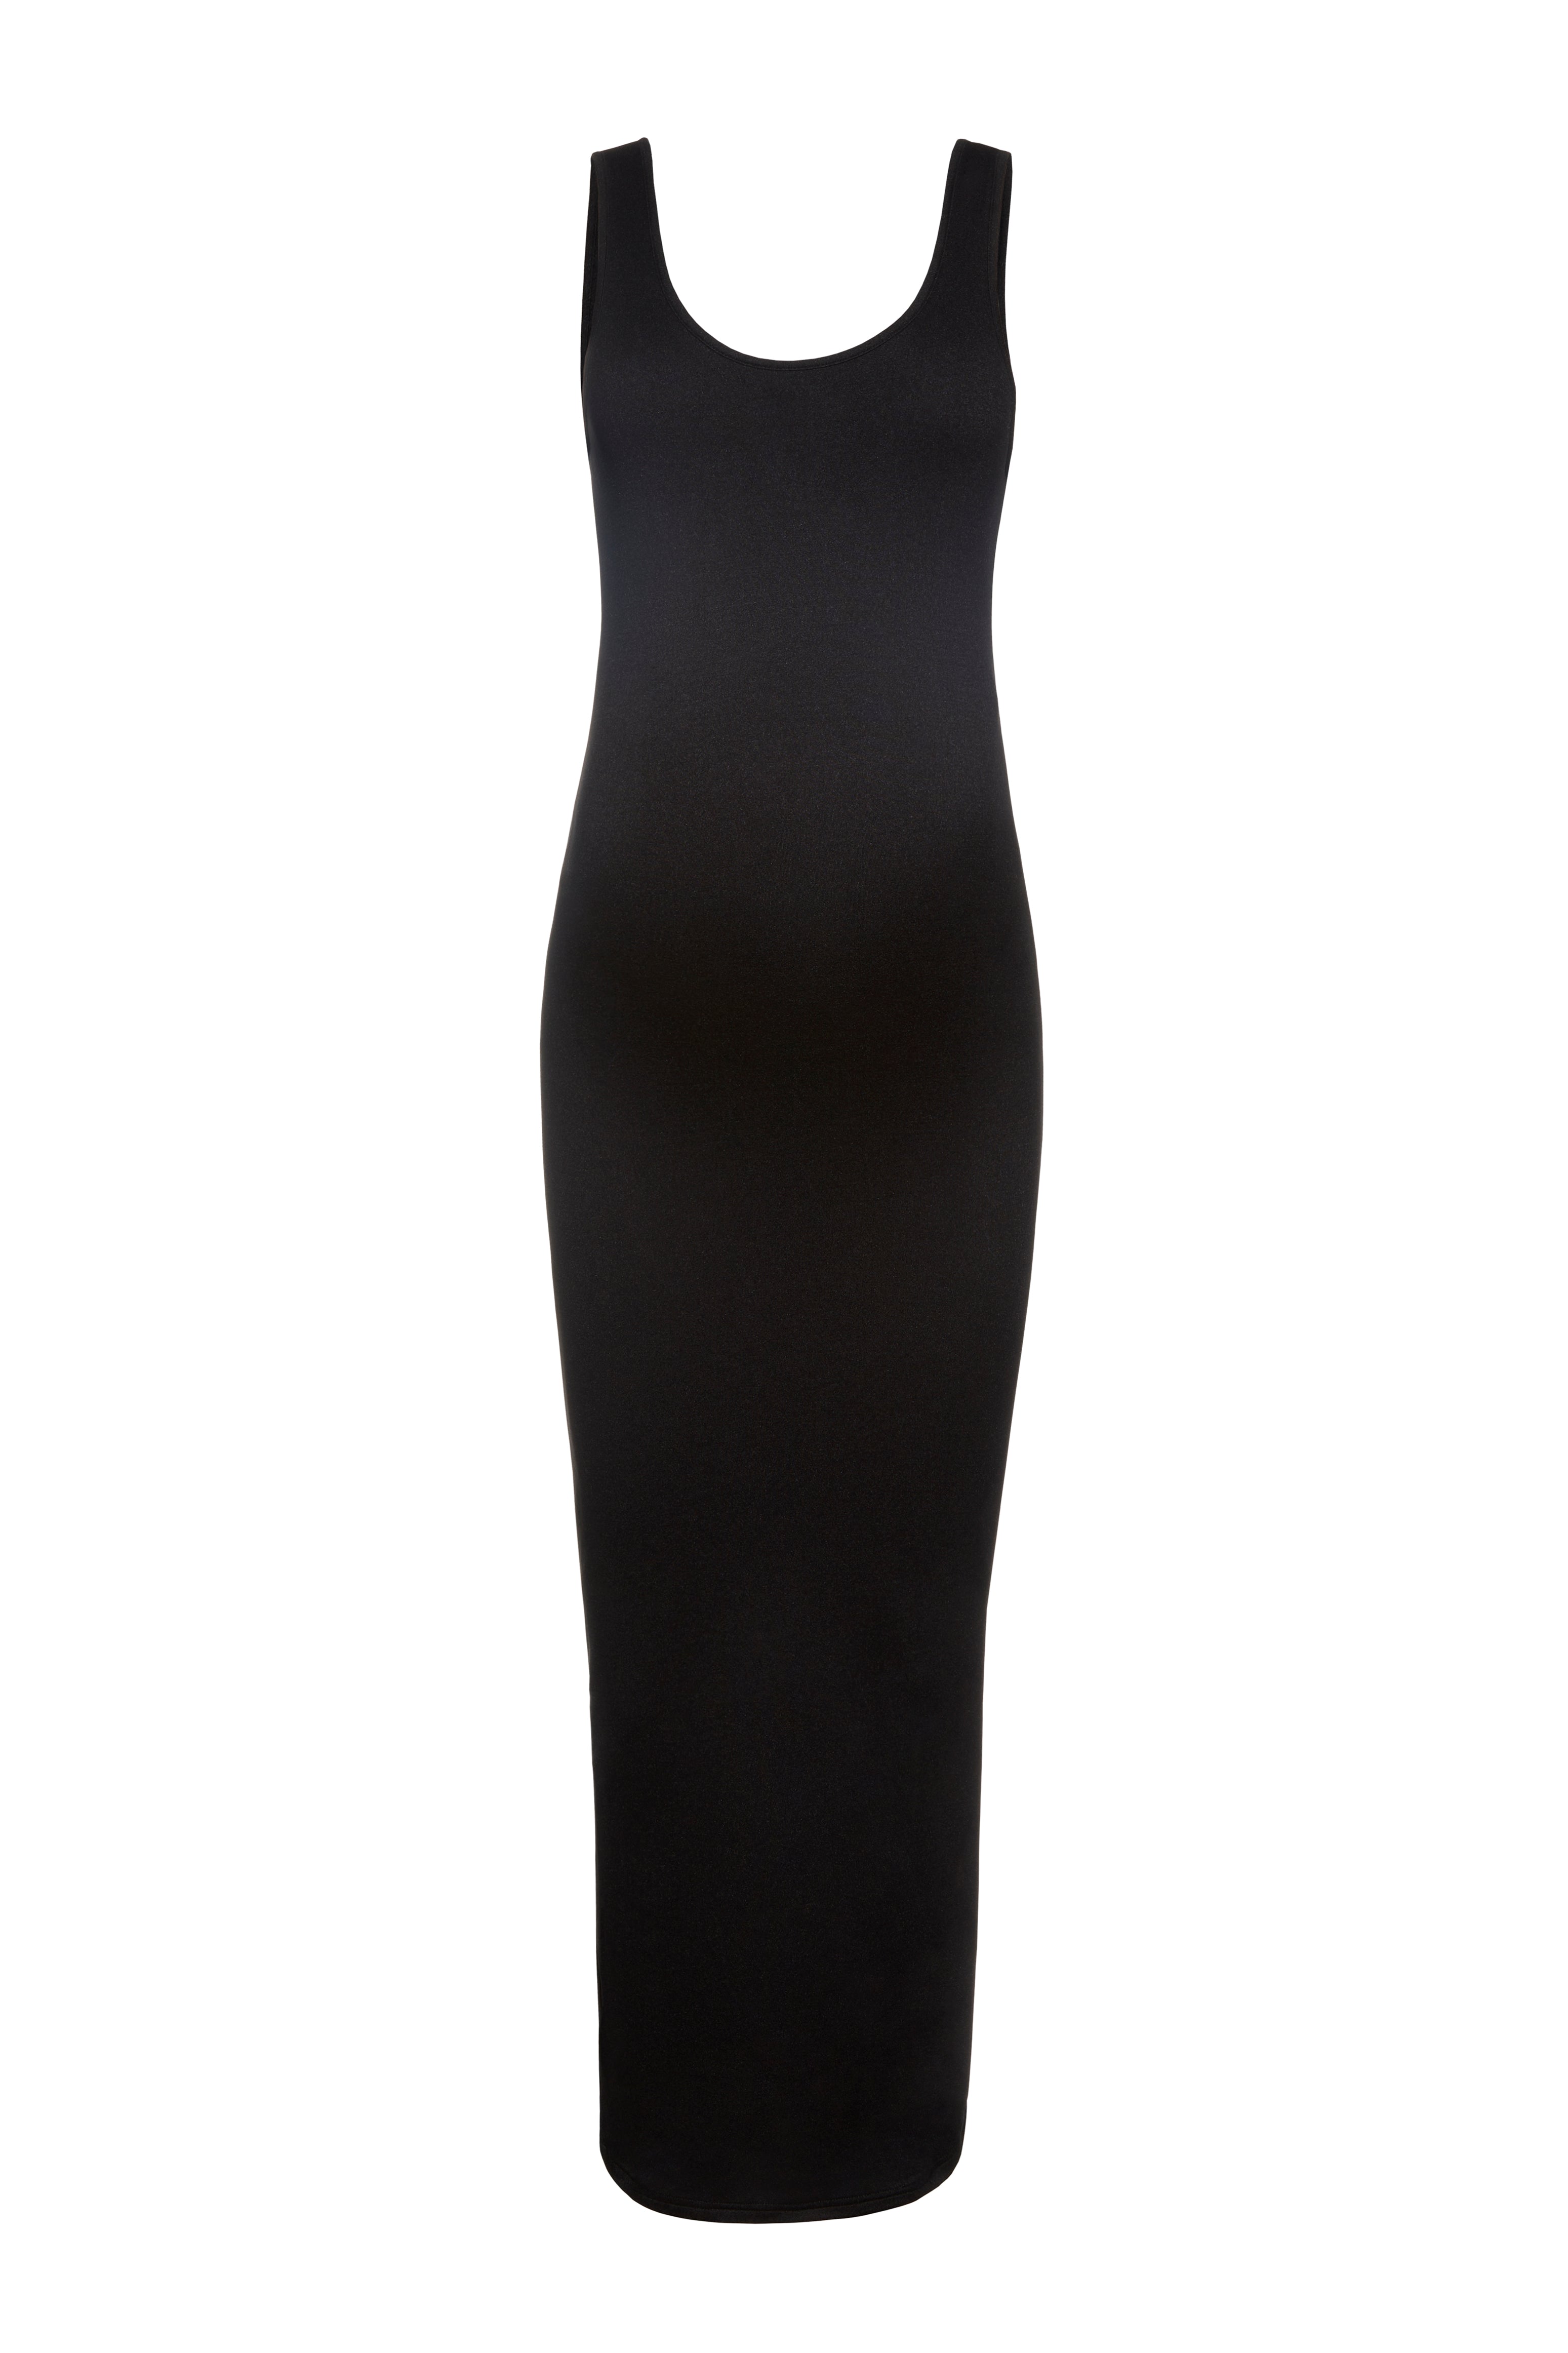 Shop The Lite Tank Dress | Women's Soft Jersey Light Weight Dress ...